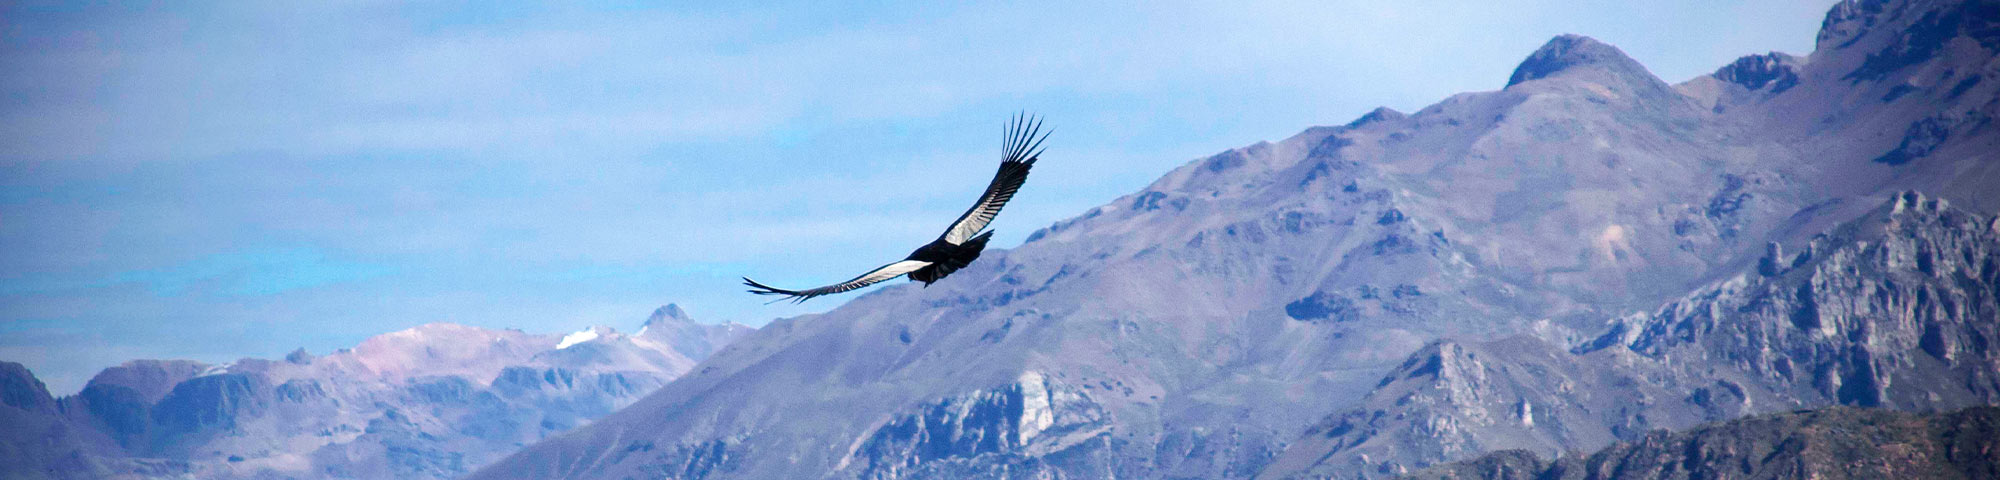 El turismo se recupera en Arequipa: 19,000 turistas visitaron el valle del Colca en mayo 